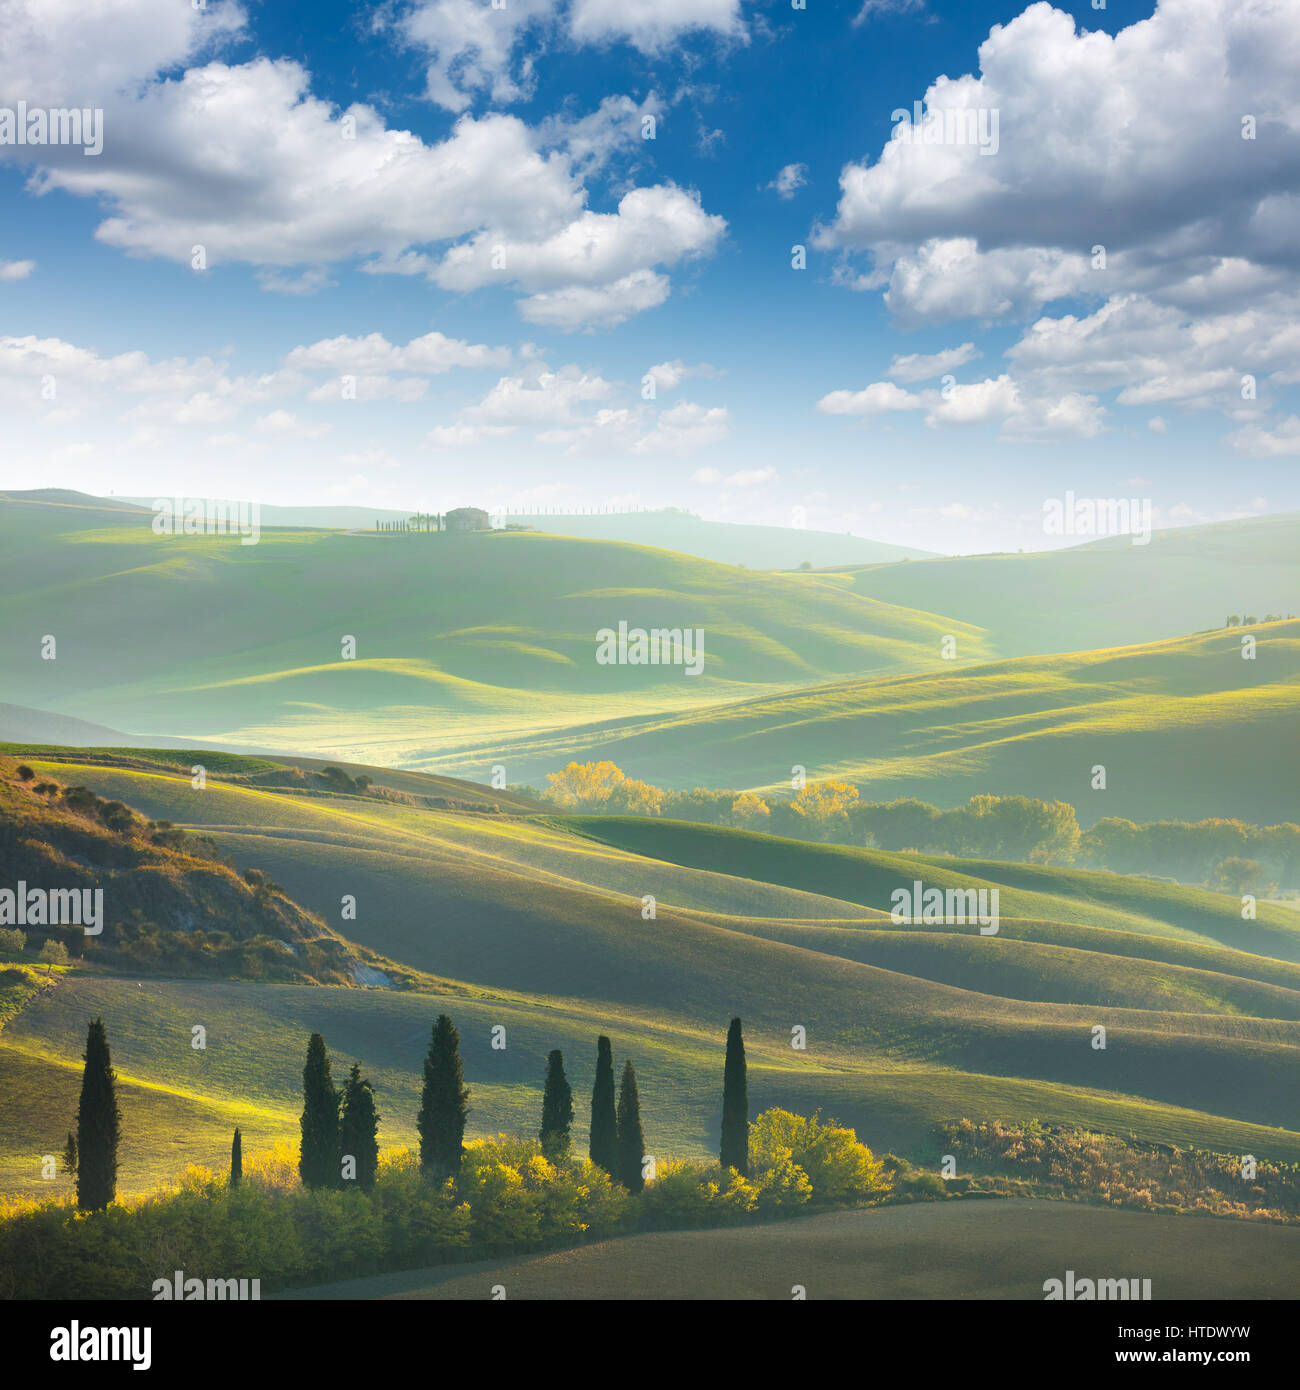 Frische grüne Toskana Landschaft im Frühling - Welle Hügel, Zypressen Bäumen, Wiesen und schönen blauen Himmel. Toskana, Italien, Europa Stockfoto